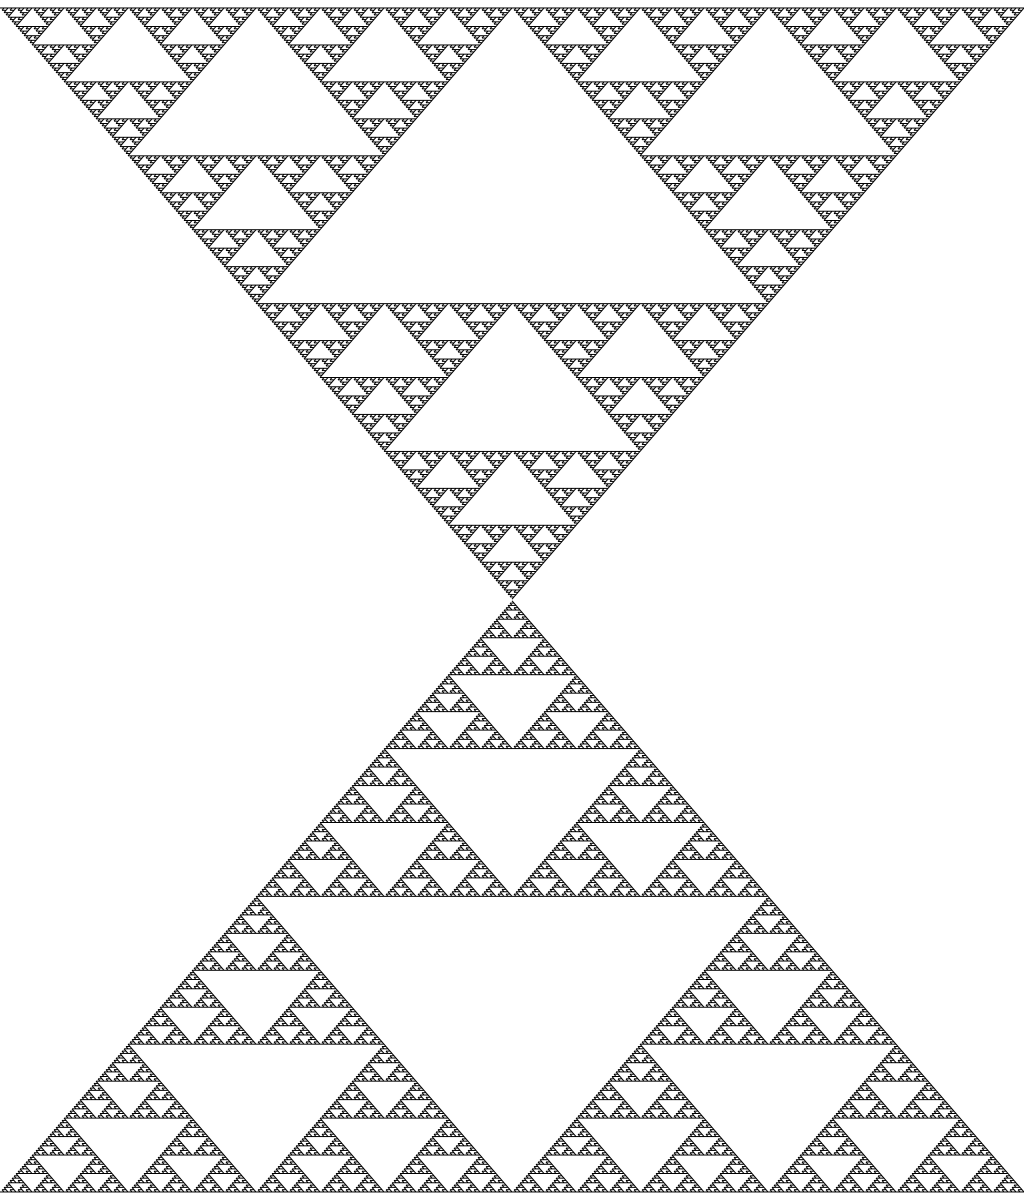 test/reference/shape-sierpinski.base.argb32.ref.png